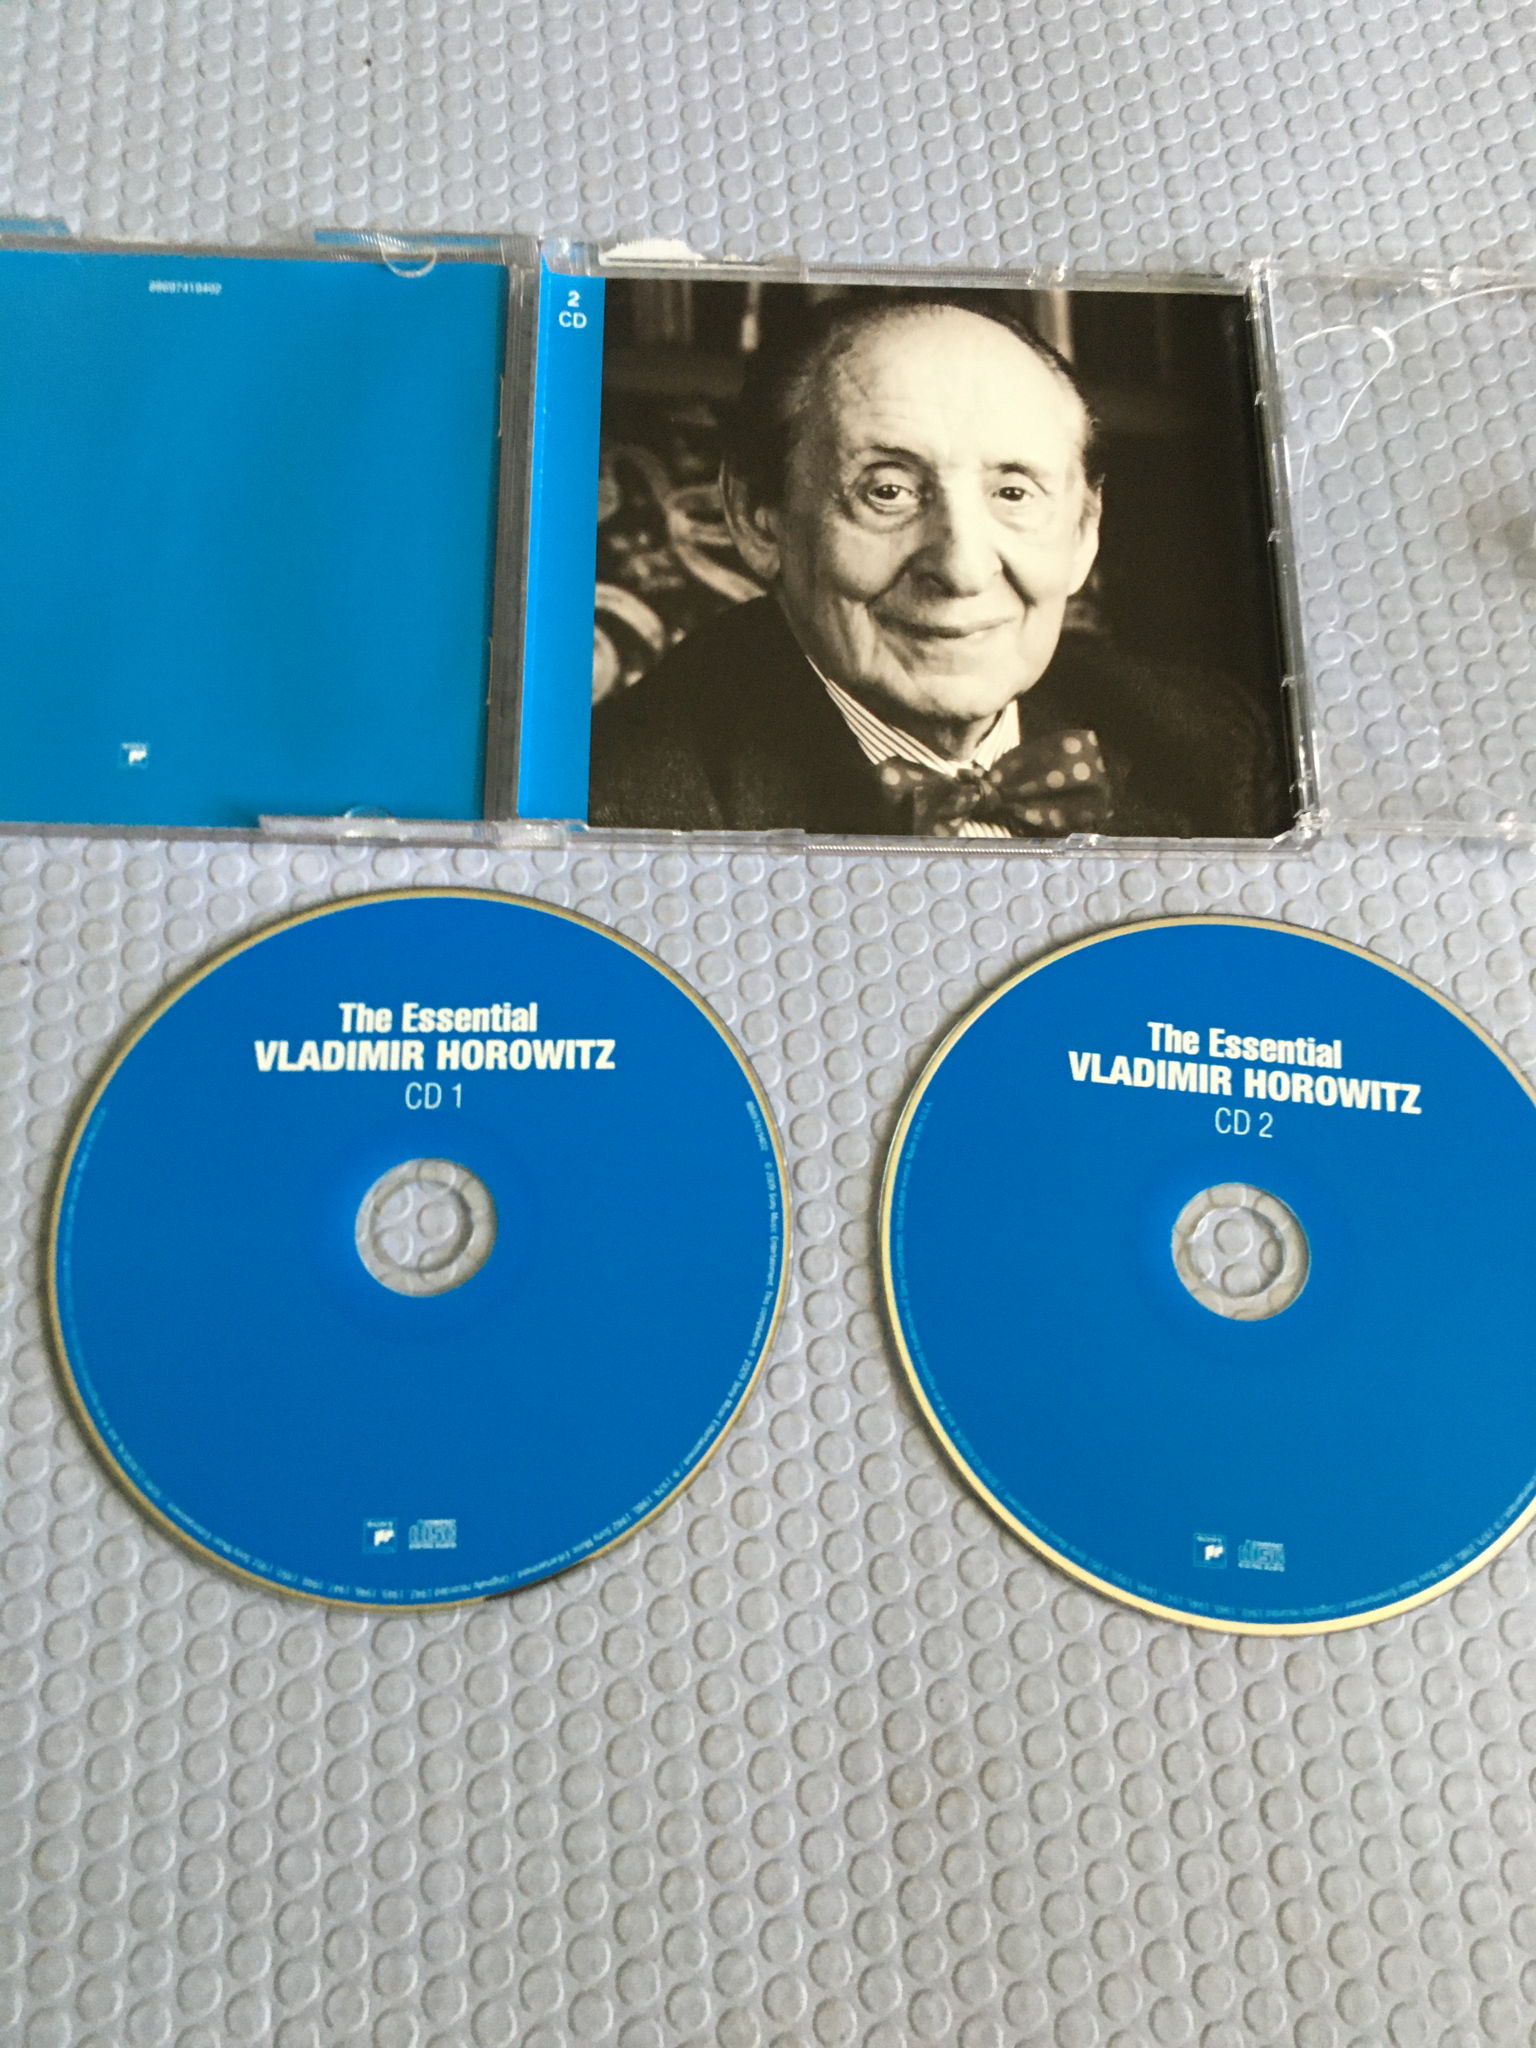 Vladimir Horowitz  The Essential double cd set 2009 sony 2